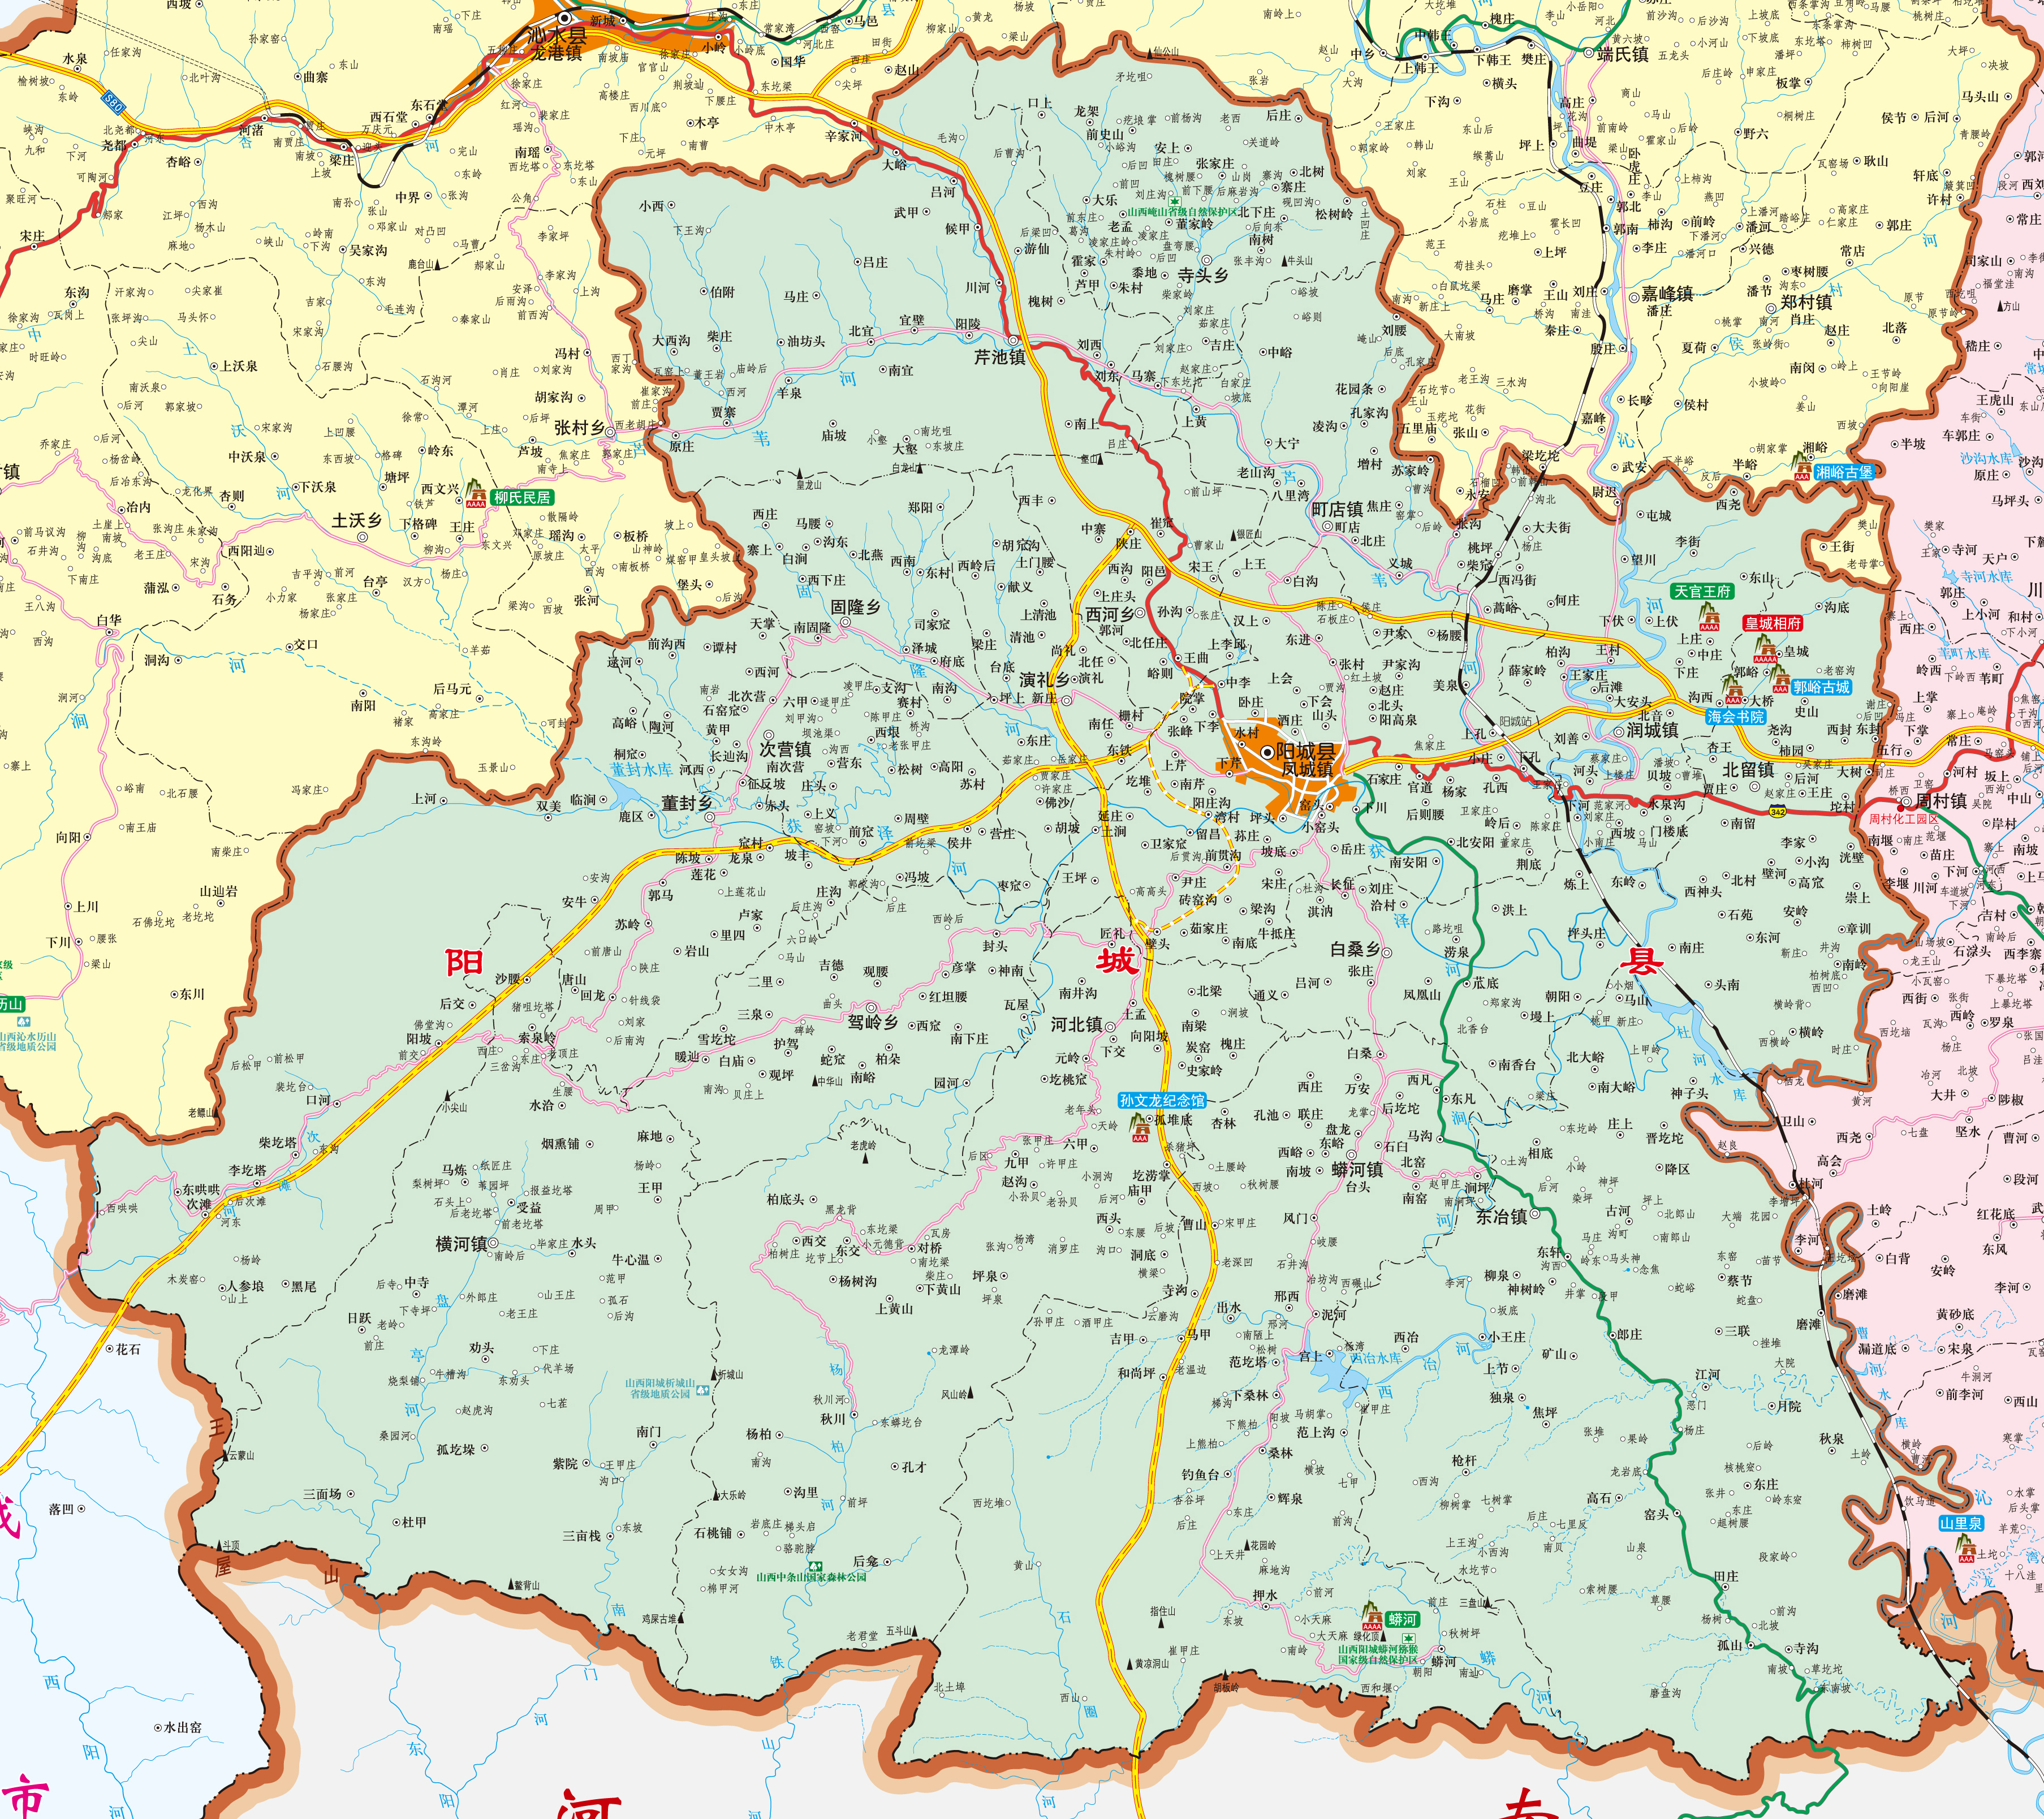 晋城城区地图放大版图片